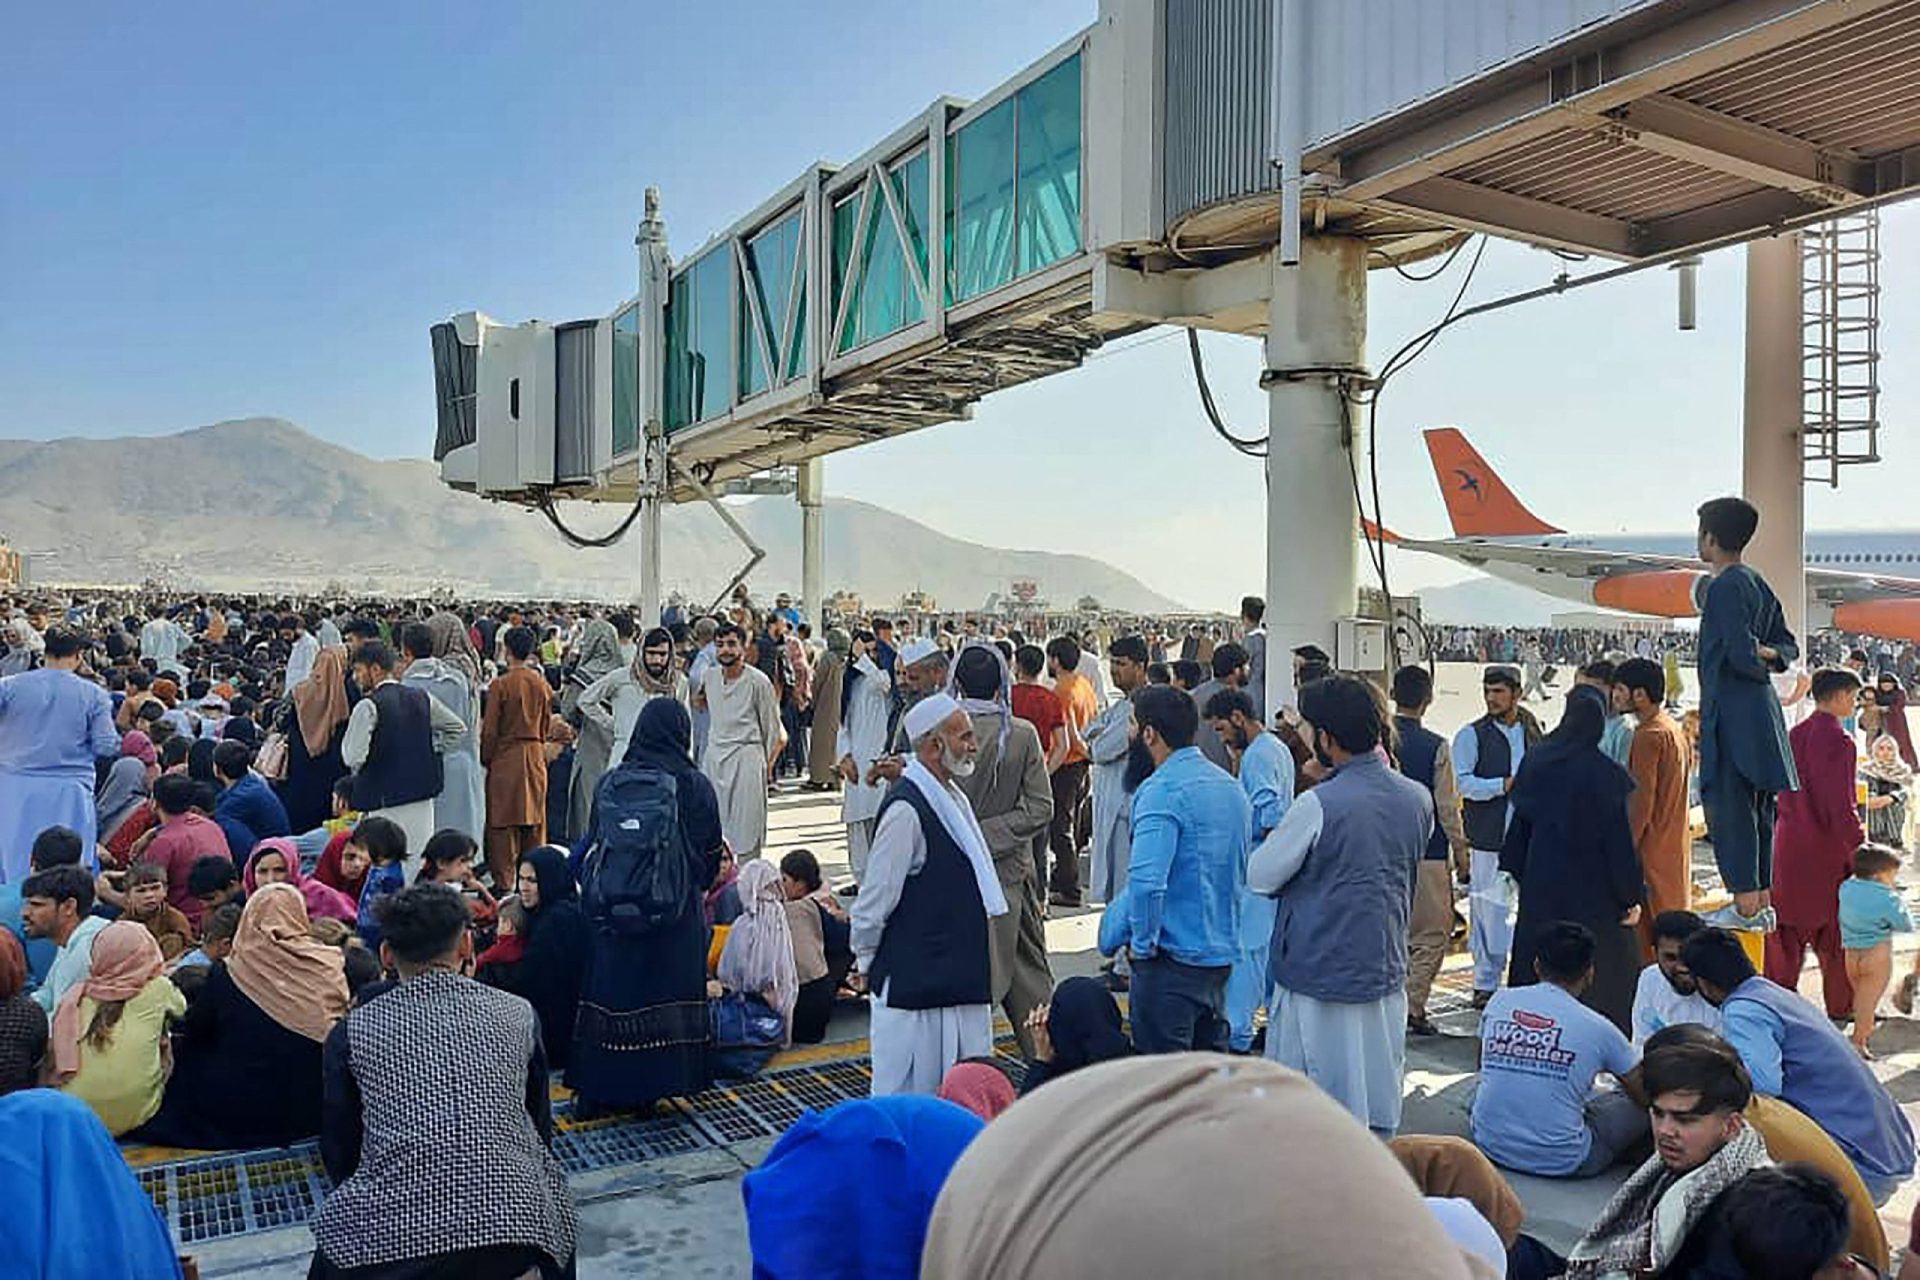 Maioria dos portugueses no Afeganistão já abandonou o país, mas &#8220;há quatro ou cinco&#8221; ainda no aeroporto